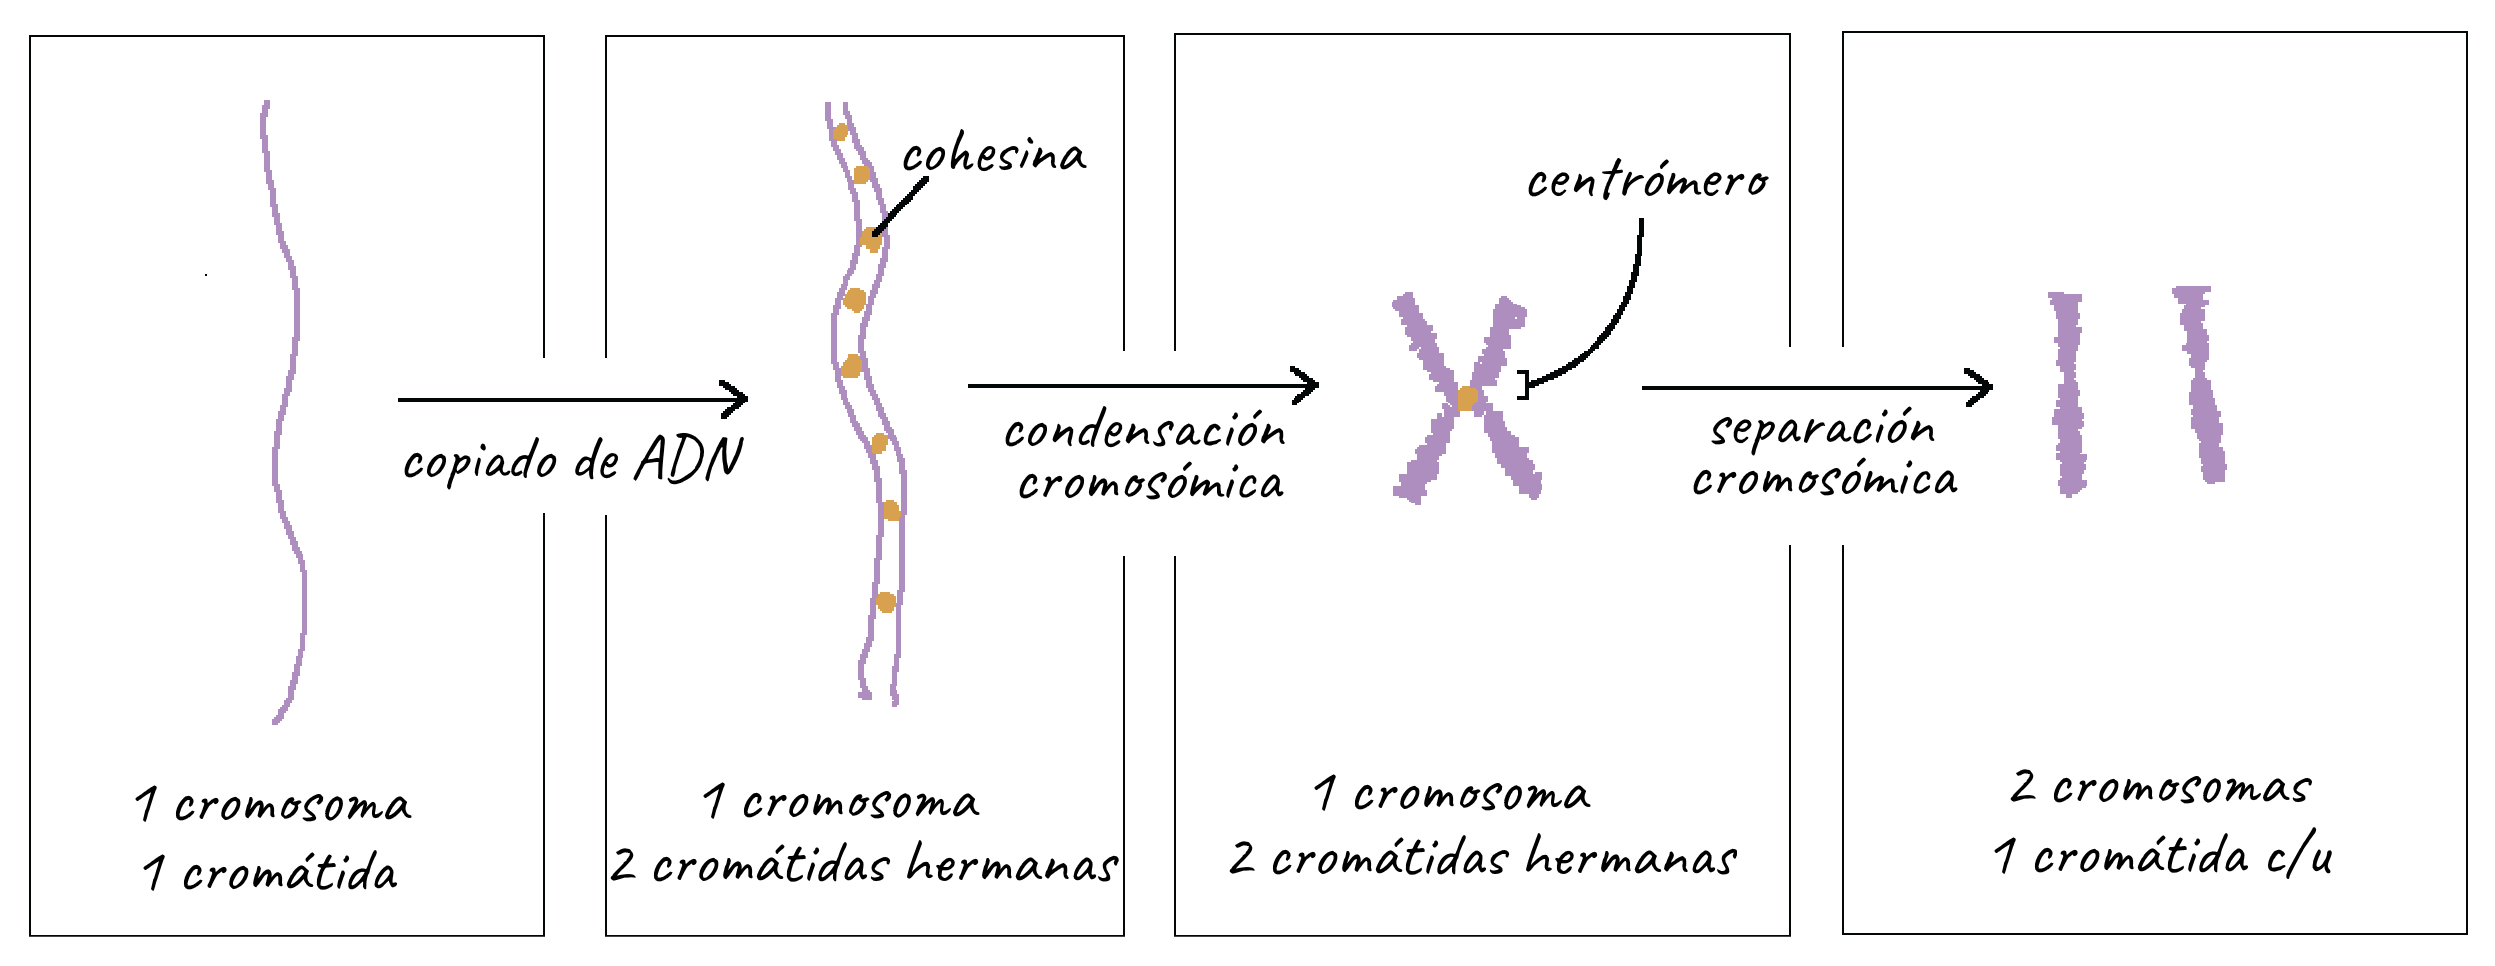 para agregar Impulso Subir y bajar Cromosomas (artículo) | Ciclo celular | Khan Academy